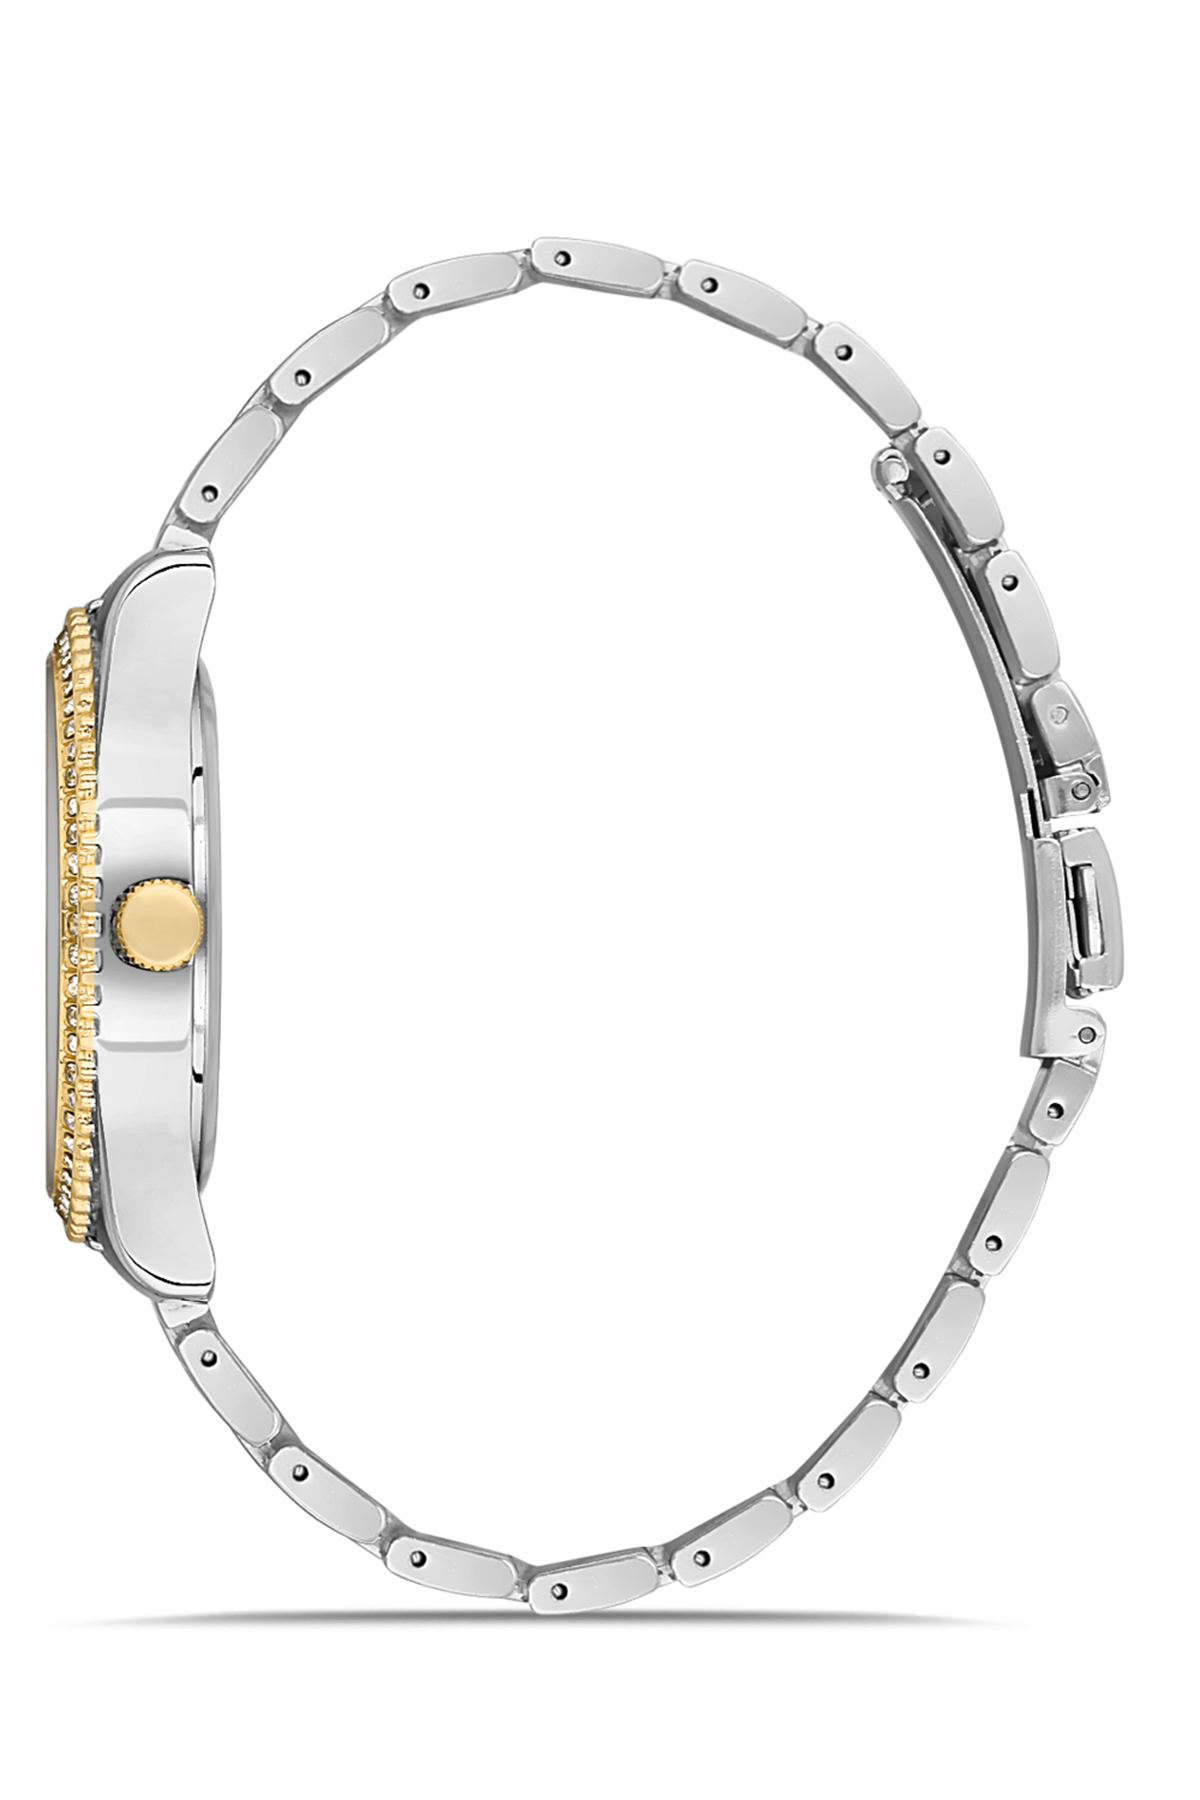 Premium Set Kadın Kol Saati Gözlük Parfüm Set Kombin Gümüş-Sarı Renk st-2083s4